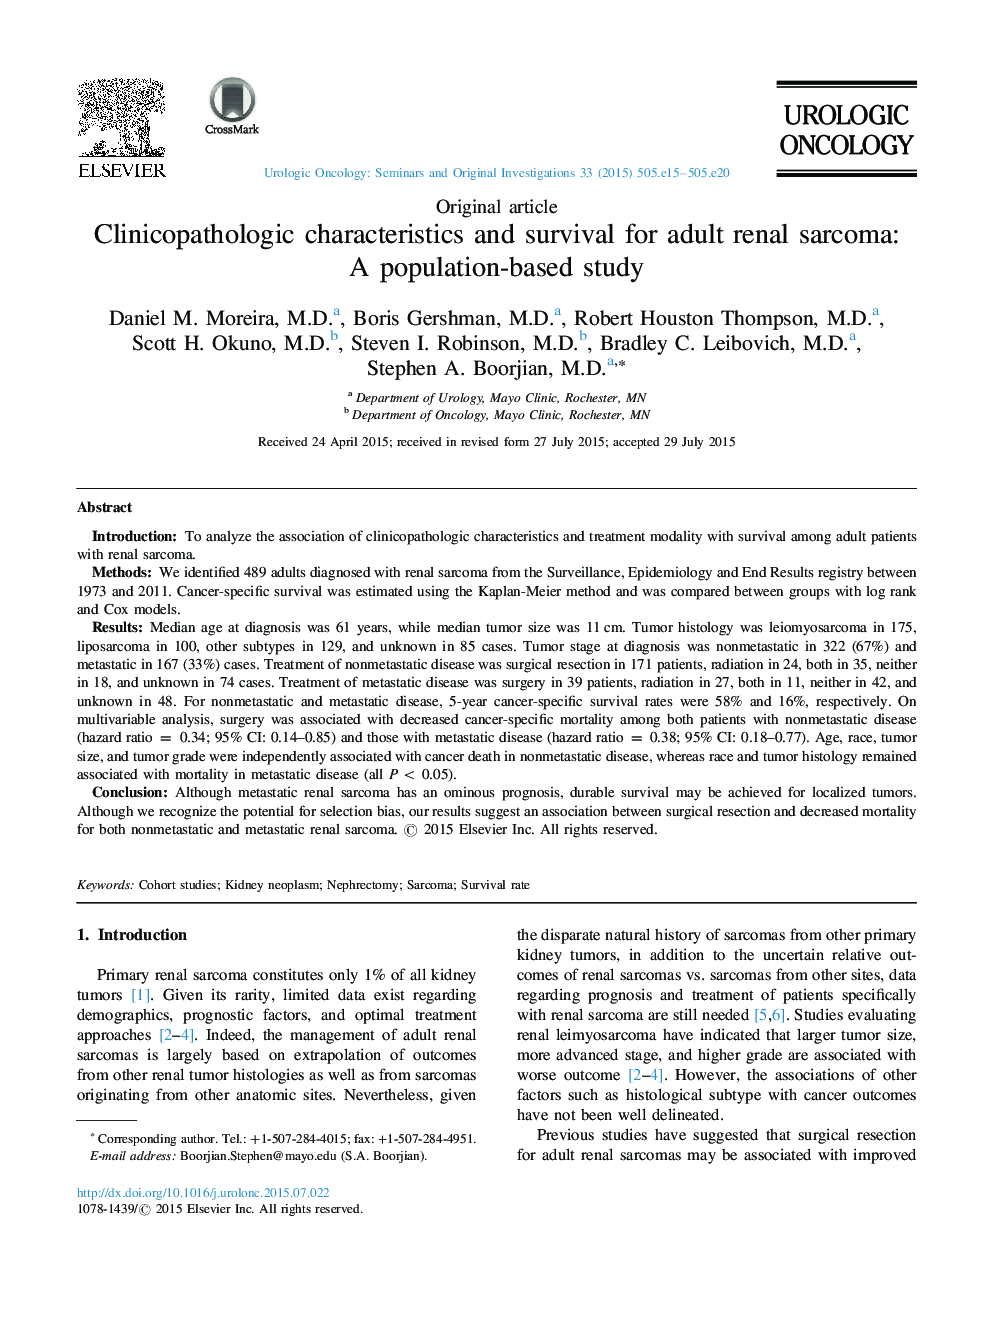 ویژگی های کلینیکوپاتولوژیک و بقا برای سارکوم کلیوی بالغ: یک مطالعه مبتنی بر جمعیت 